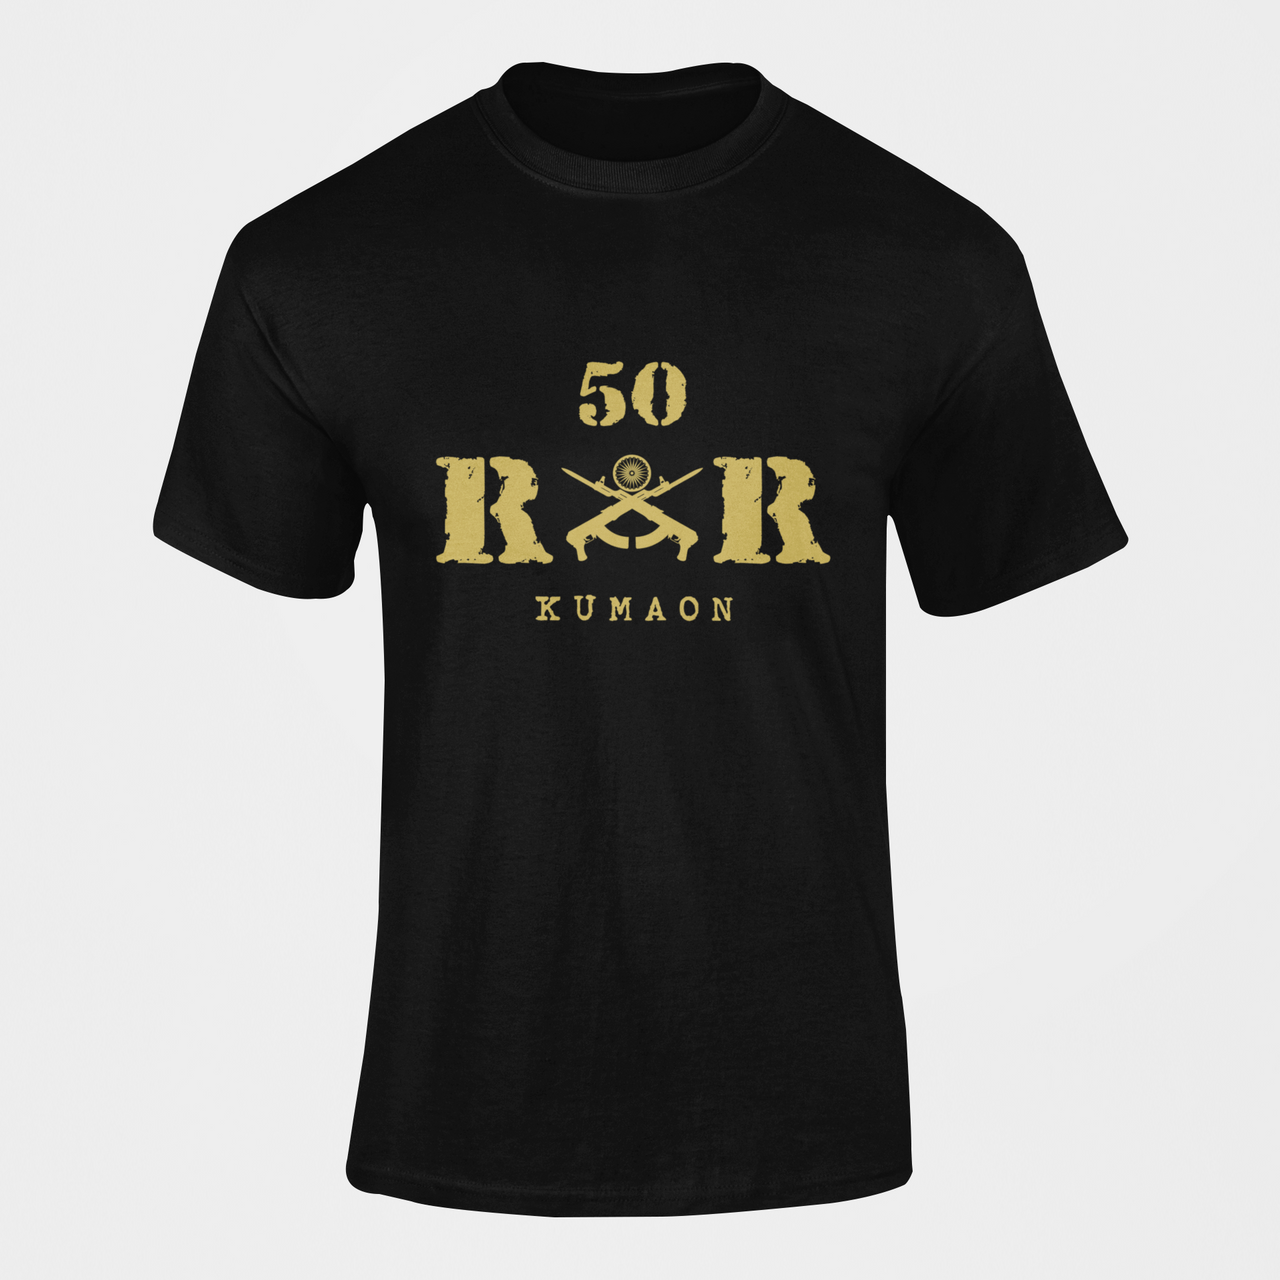 Rashtriya Rifles T-shirt - 50 RR Kumaon (Men)